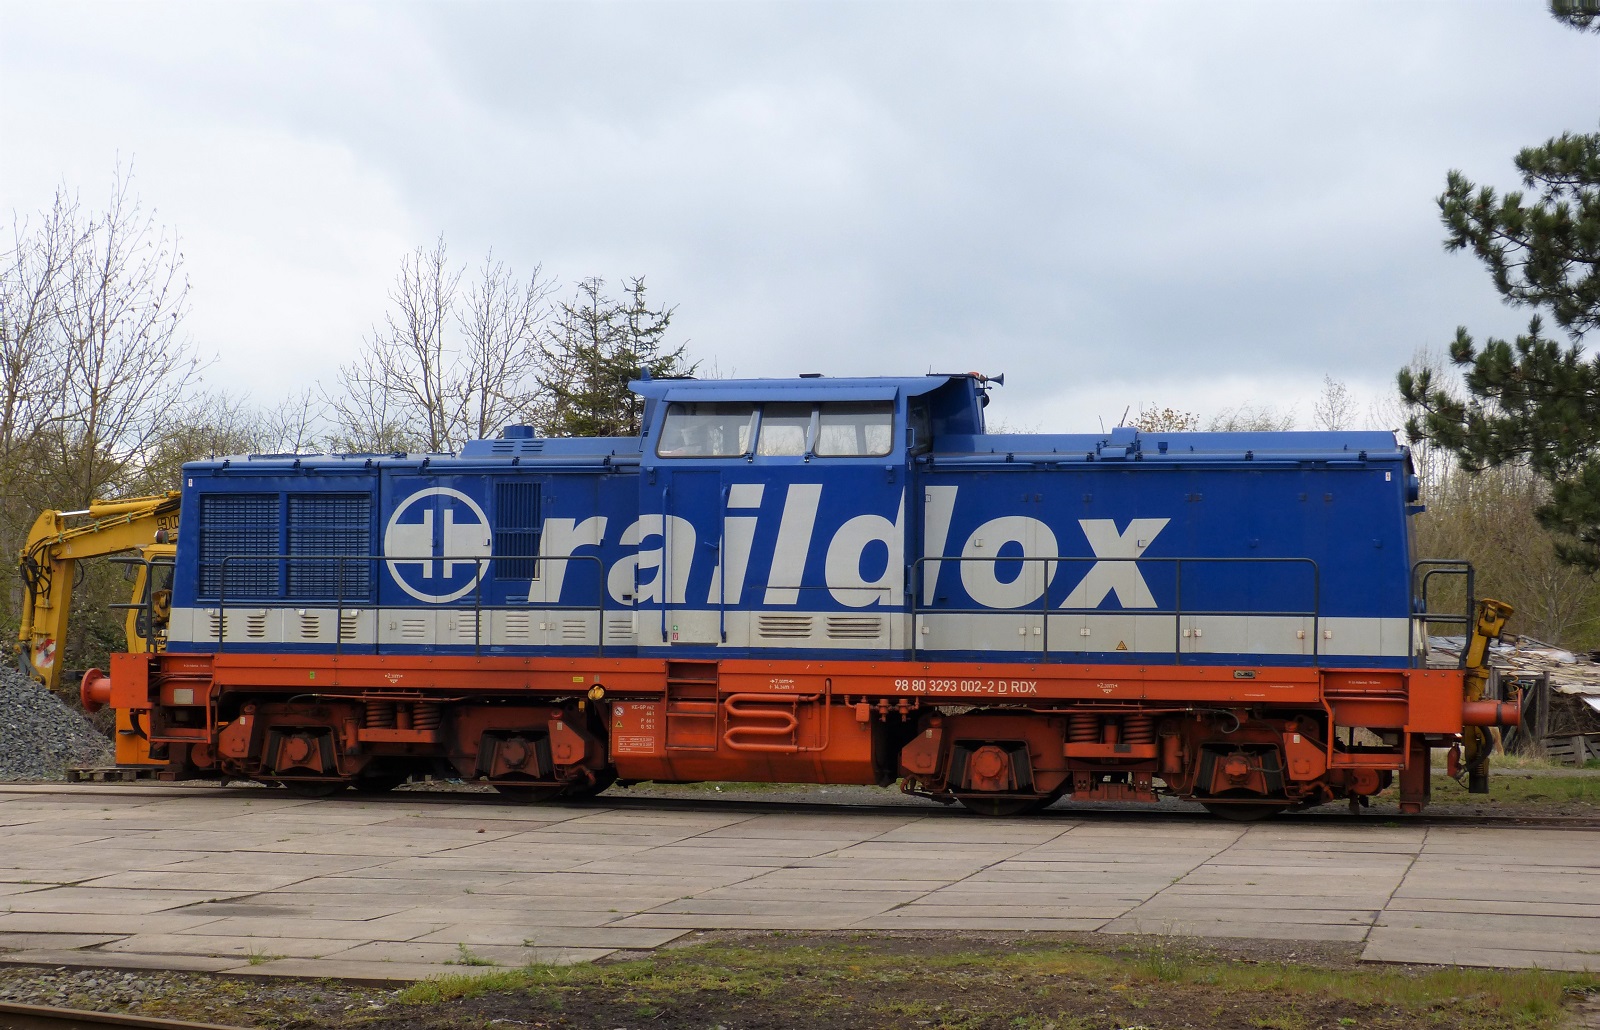 Raildox 293 002 am 15.04.2022 auf dem Gelände der Anschlußbahn Nordhausen. Rangezoomt von außerhalb. Das Gelände ist nicht eingezäunt.